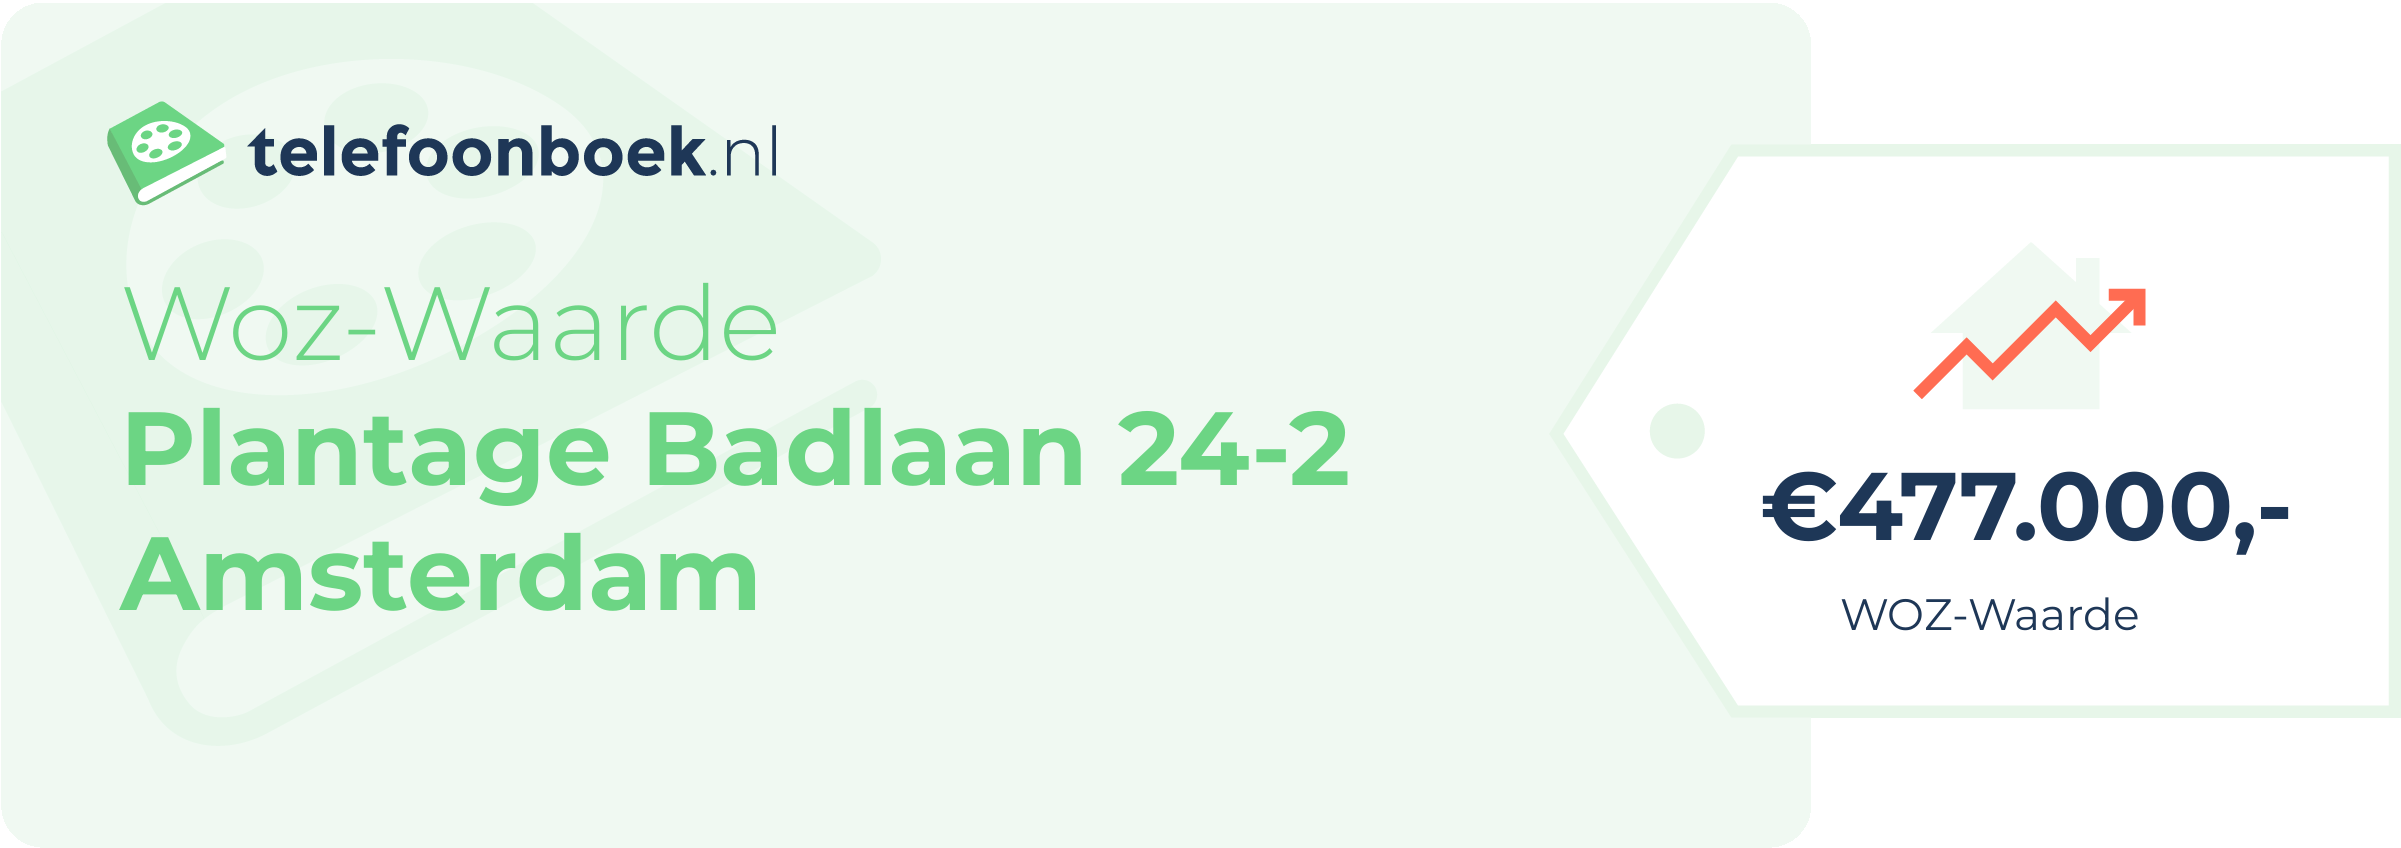 WOZ-waarde Plantage Badlaan 24-2 Amsterdam